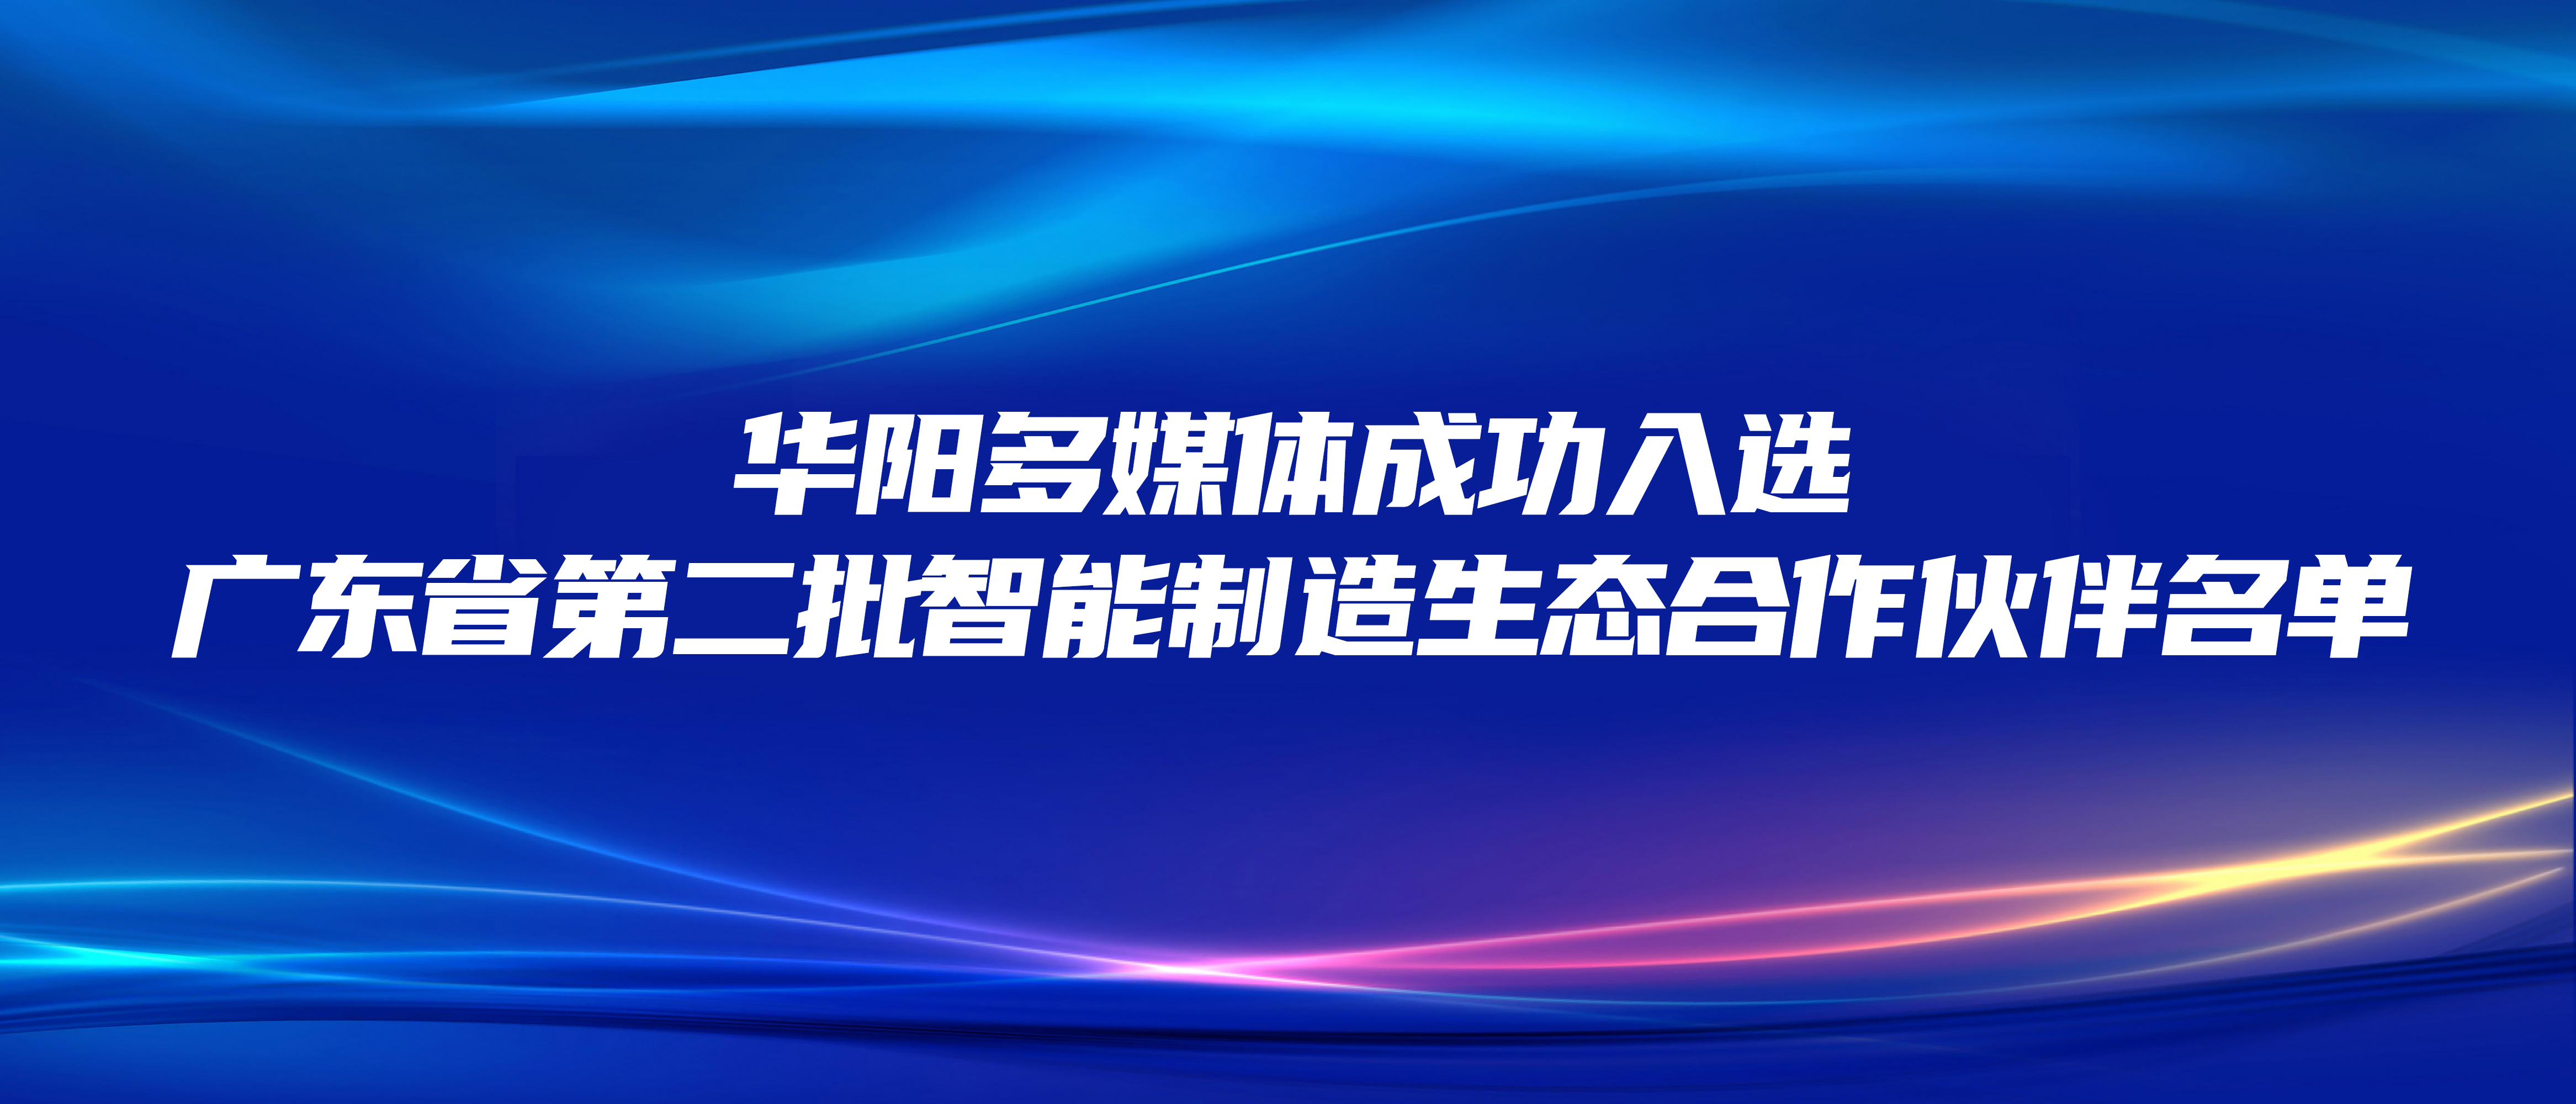 恭喜 | 华阳多媒体成功入选广东省第二批智能制造生态合作伙伴名单